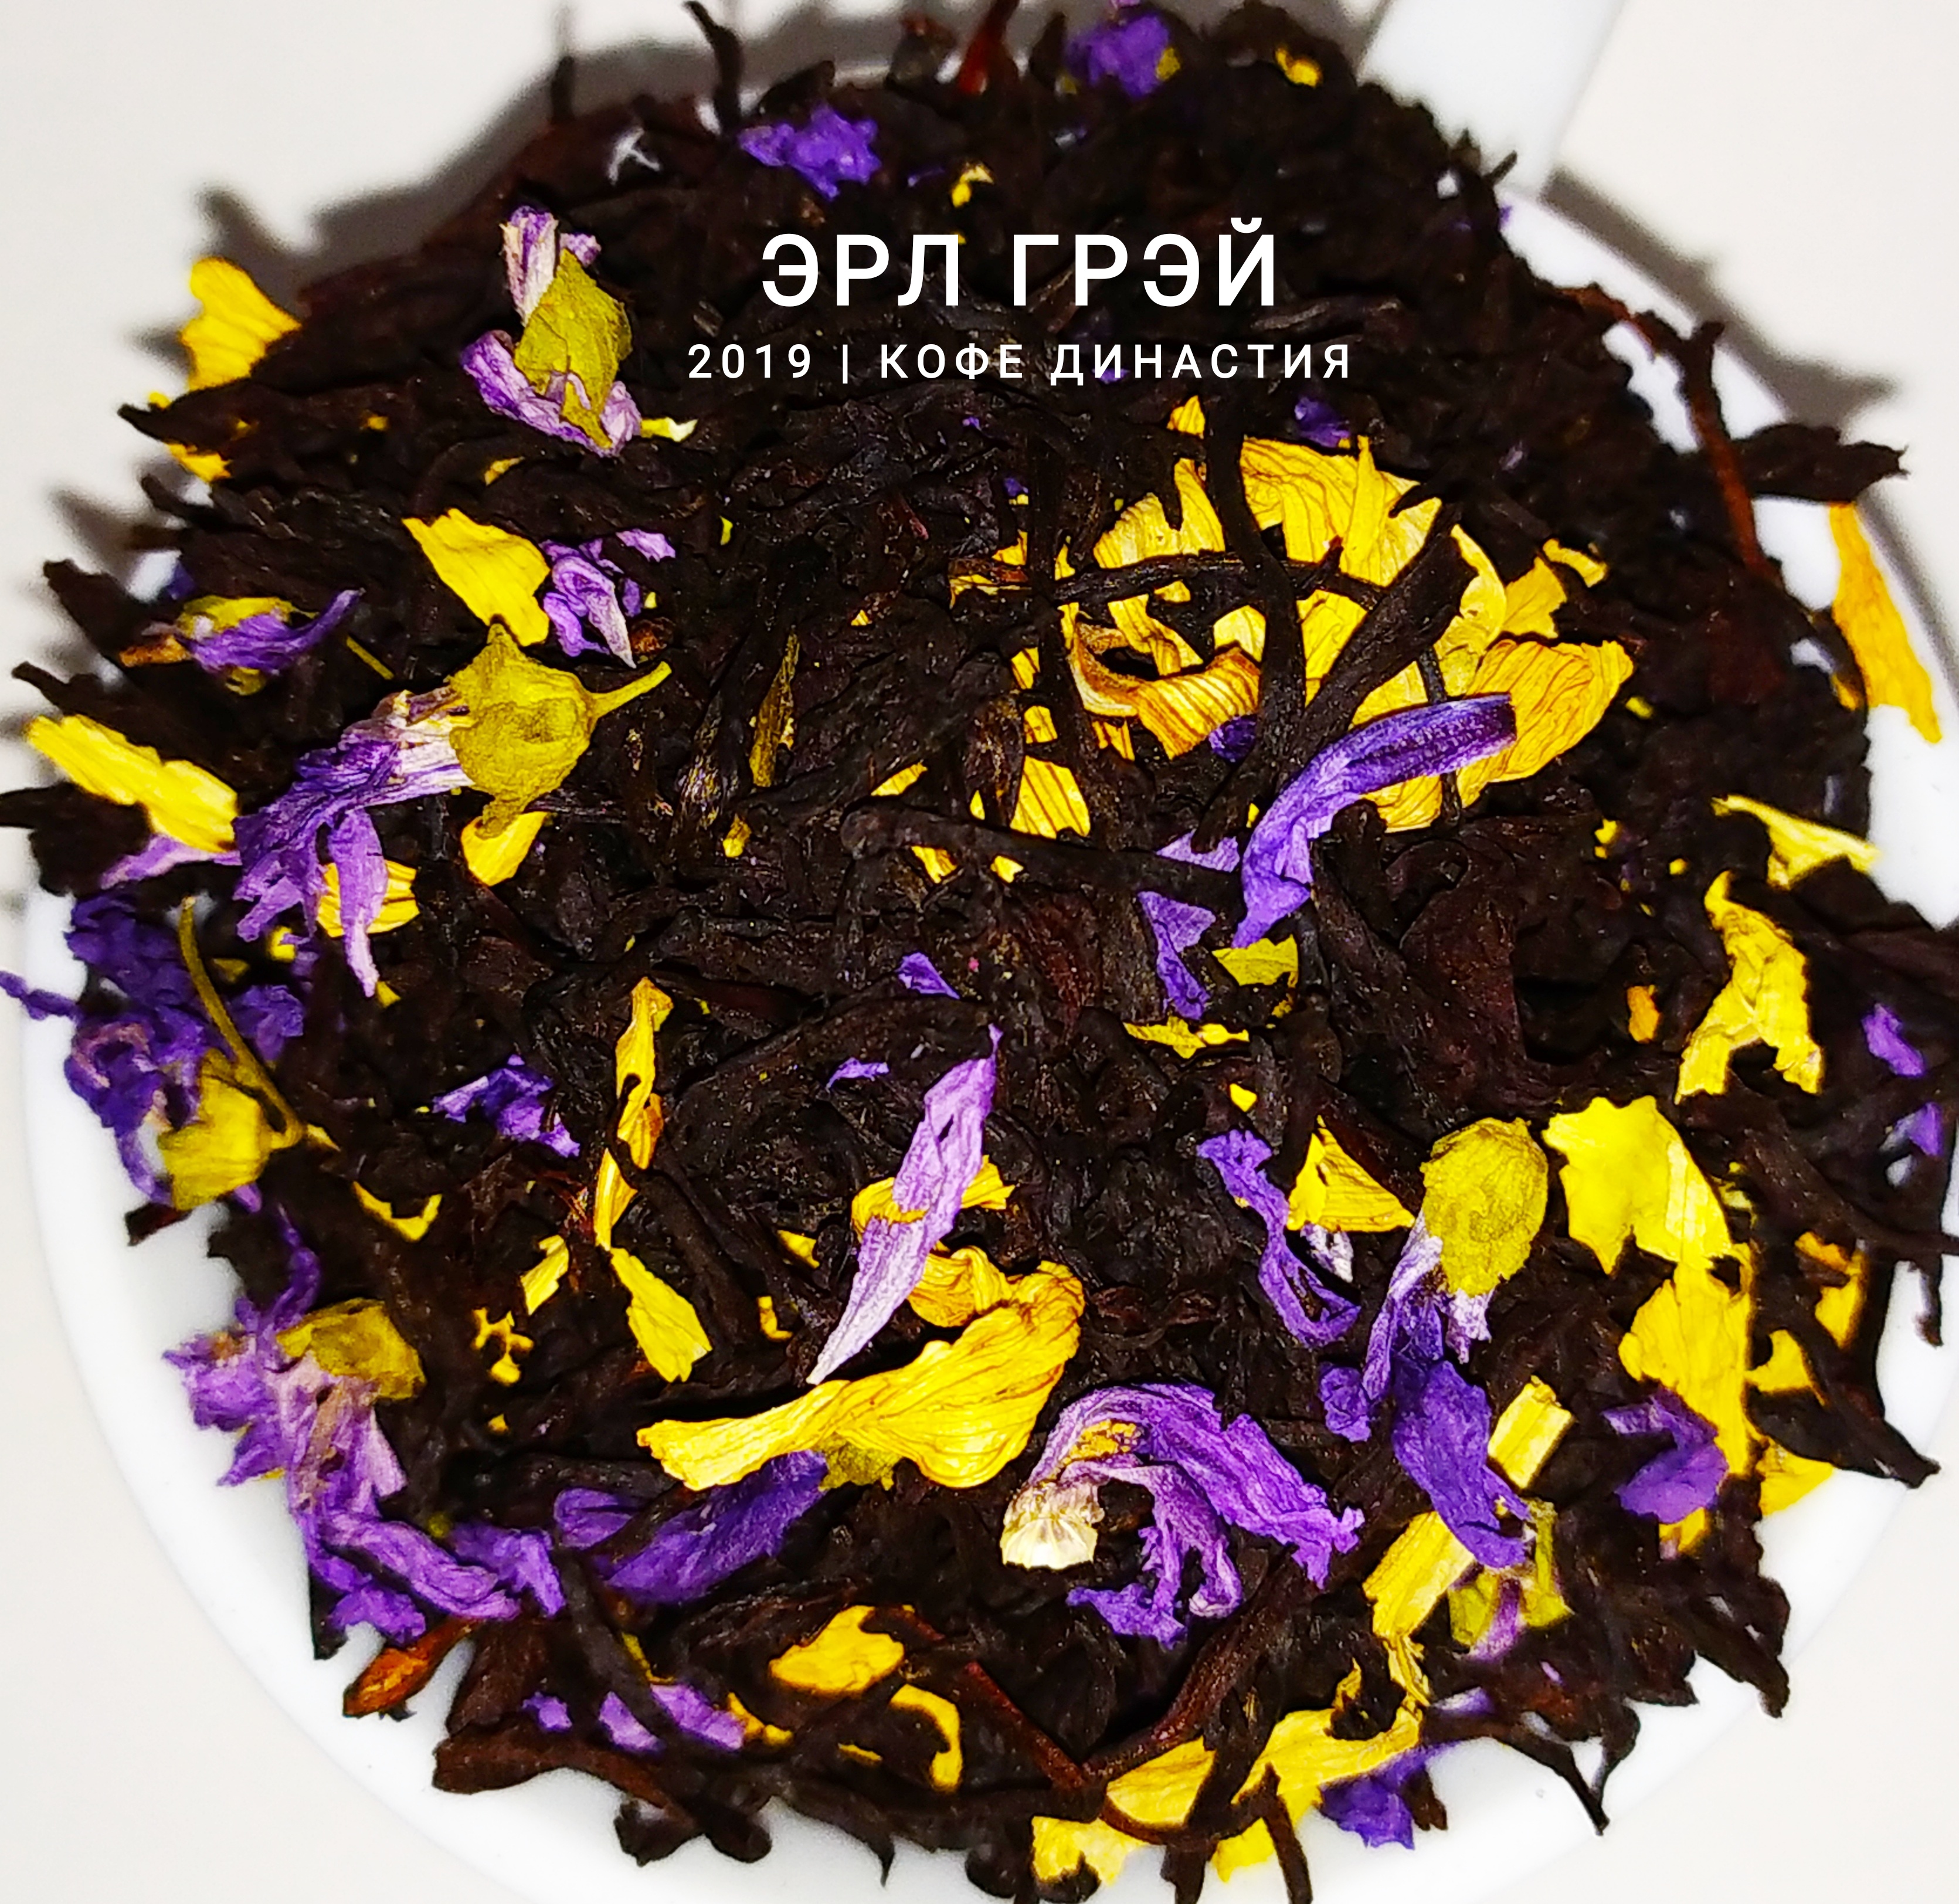 Чай ароматизированный Эрл Грэй, 500 гр.